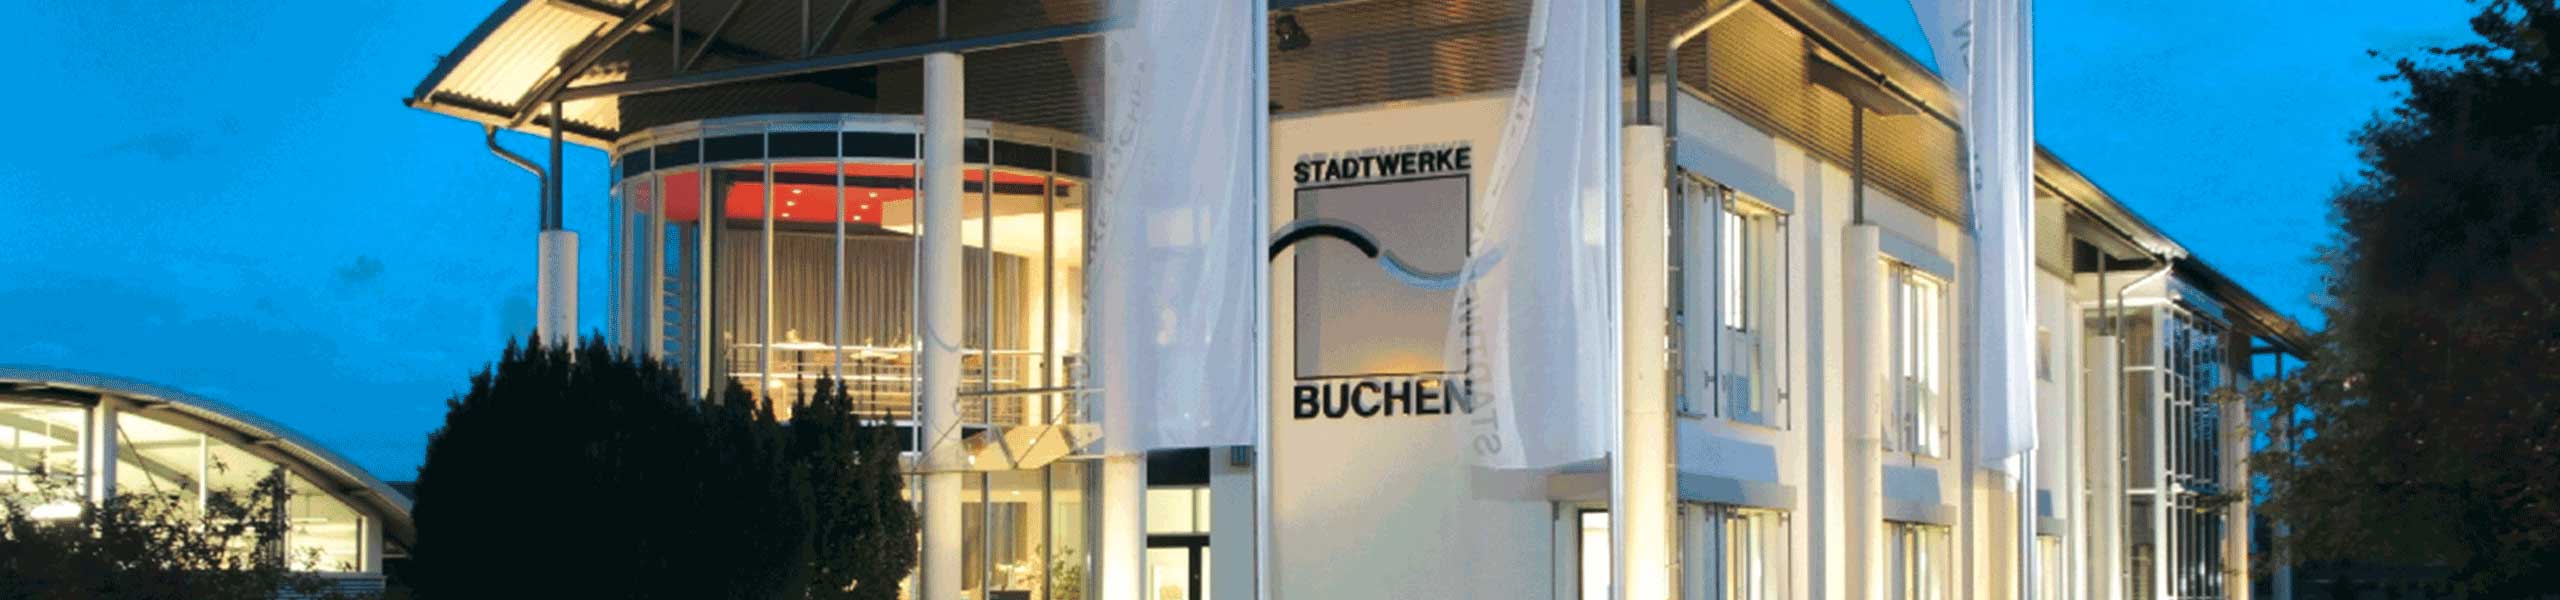 Stadtwerke Buchen GmbH & Co KG - Ihr Versorger vor Ort